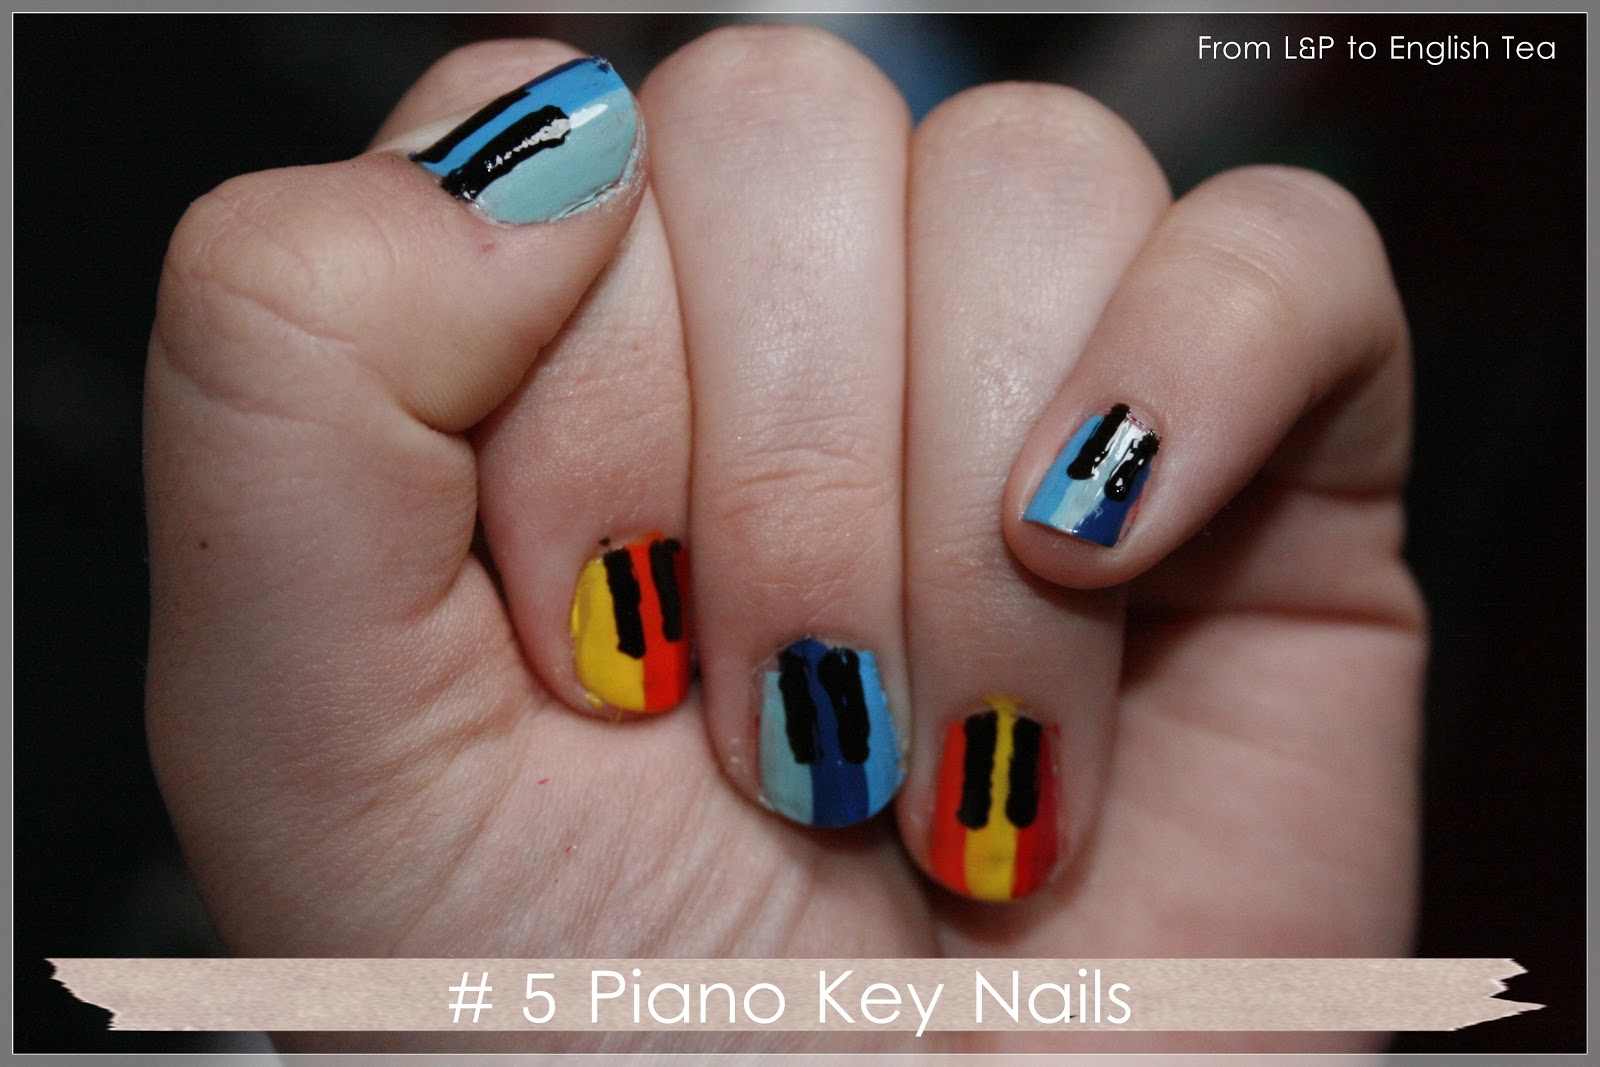 5. Piano Key Nail Art Ideas - wide 7